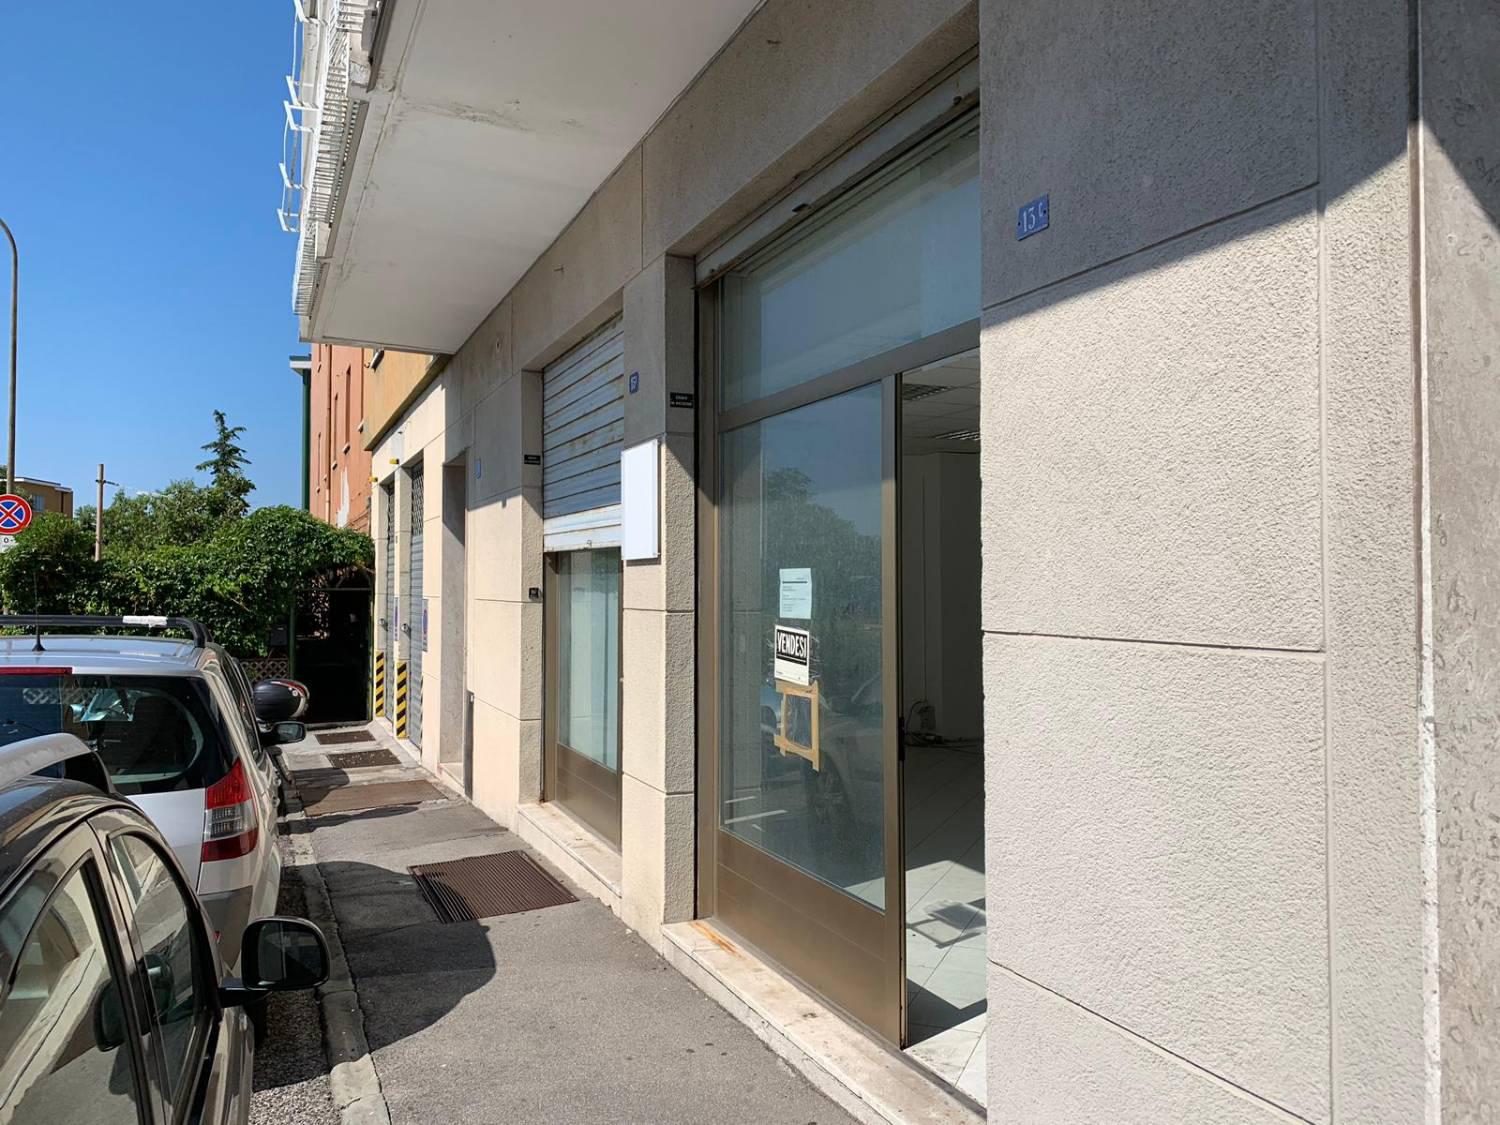 Negozio / Locale in vendita a Trieste, 3 locali, zona Zona: Centro, prezzo € 97.000 | CambioCasa.it